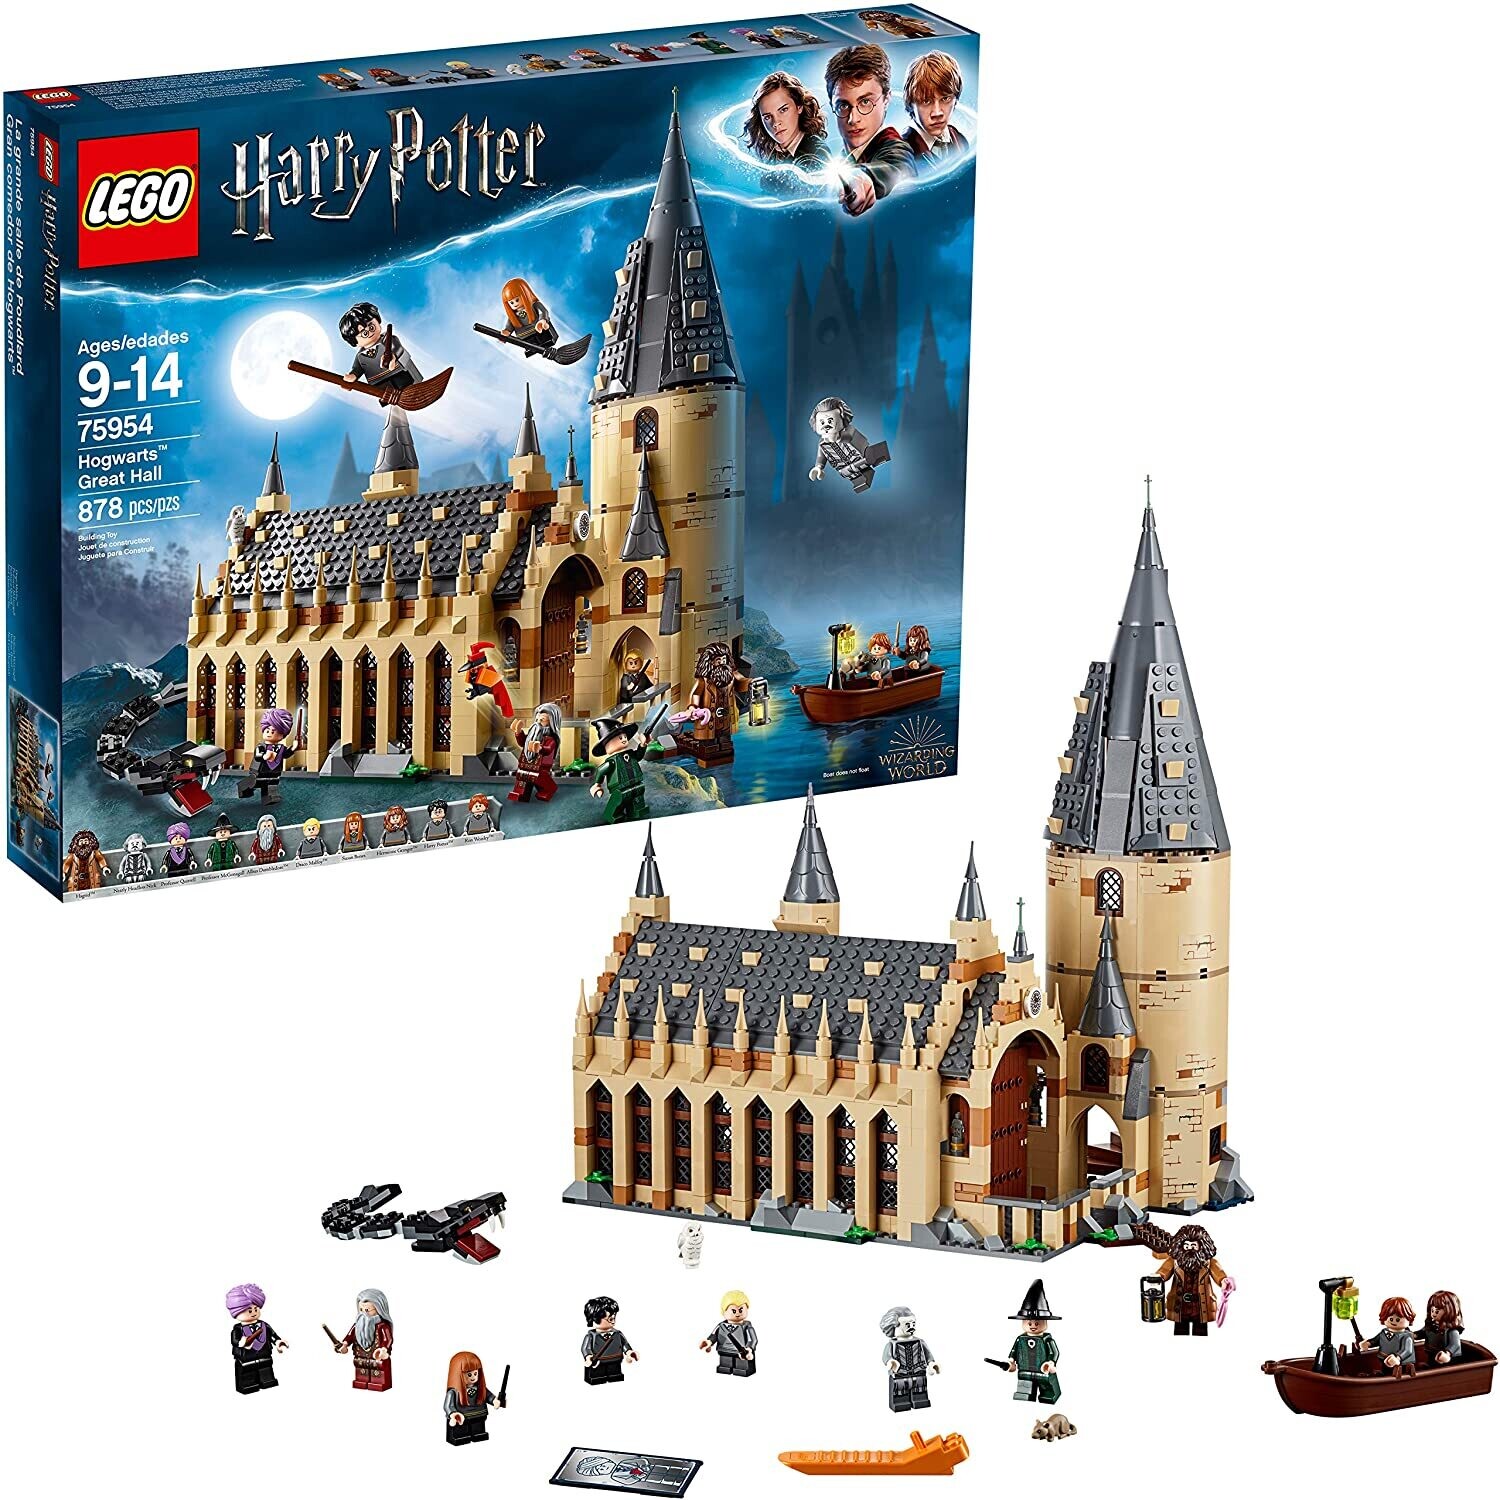 Lego 75954 Hogwarts Great Hall